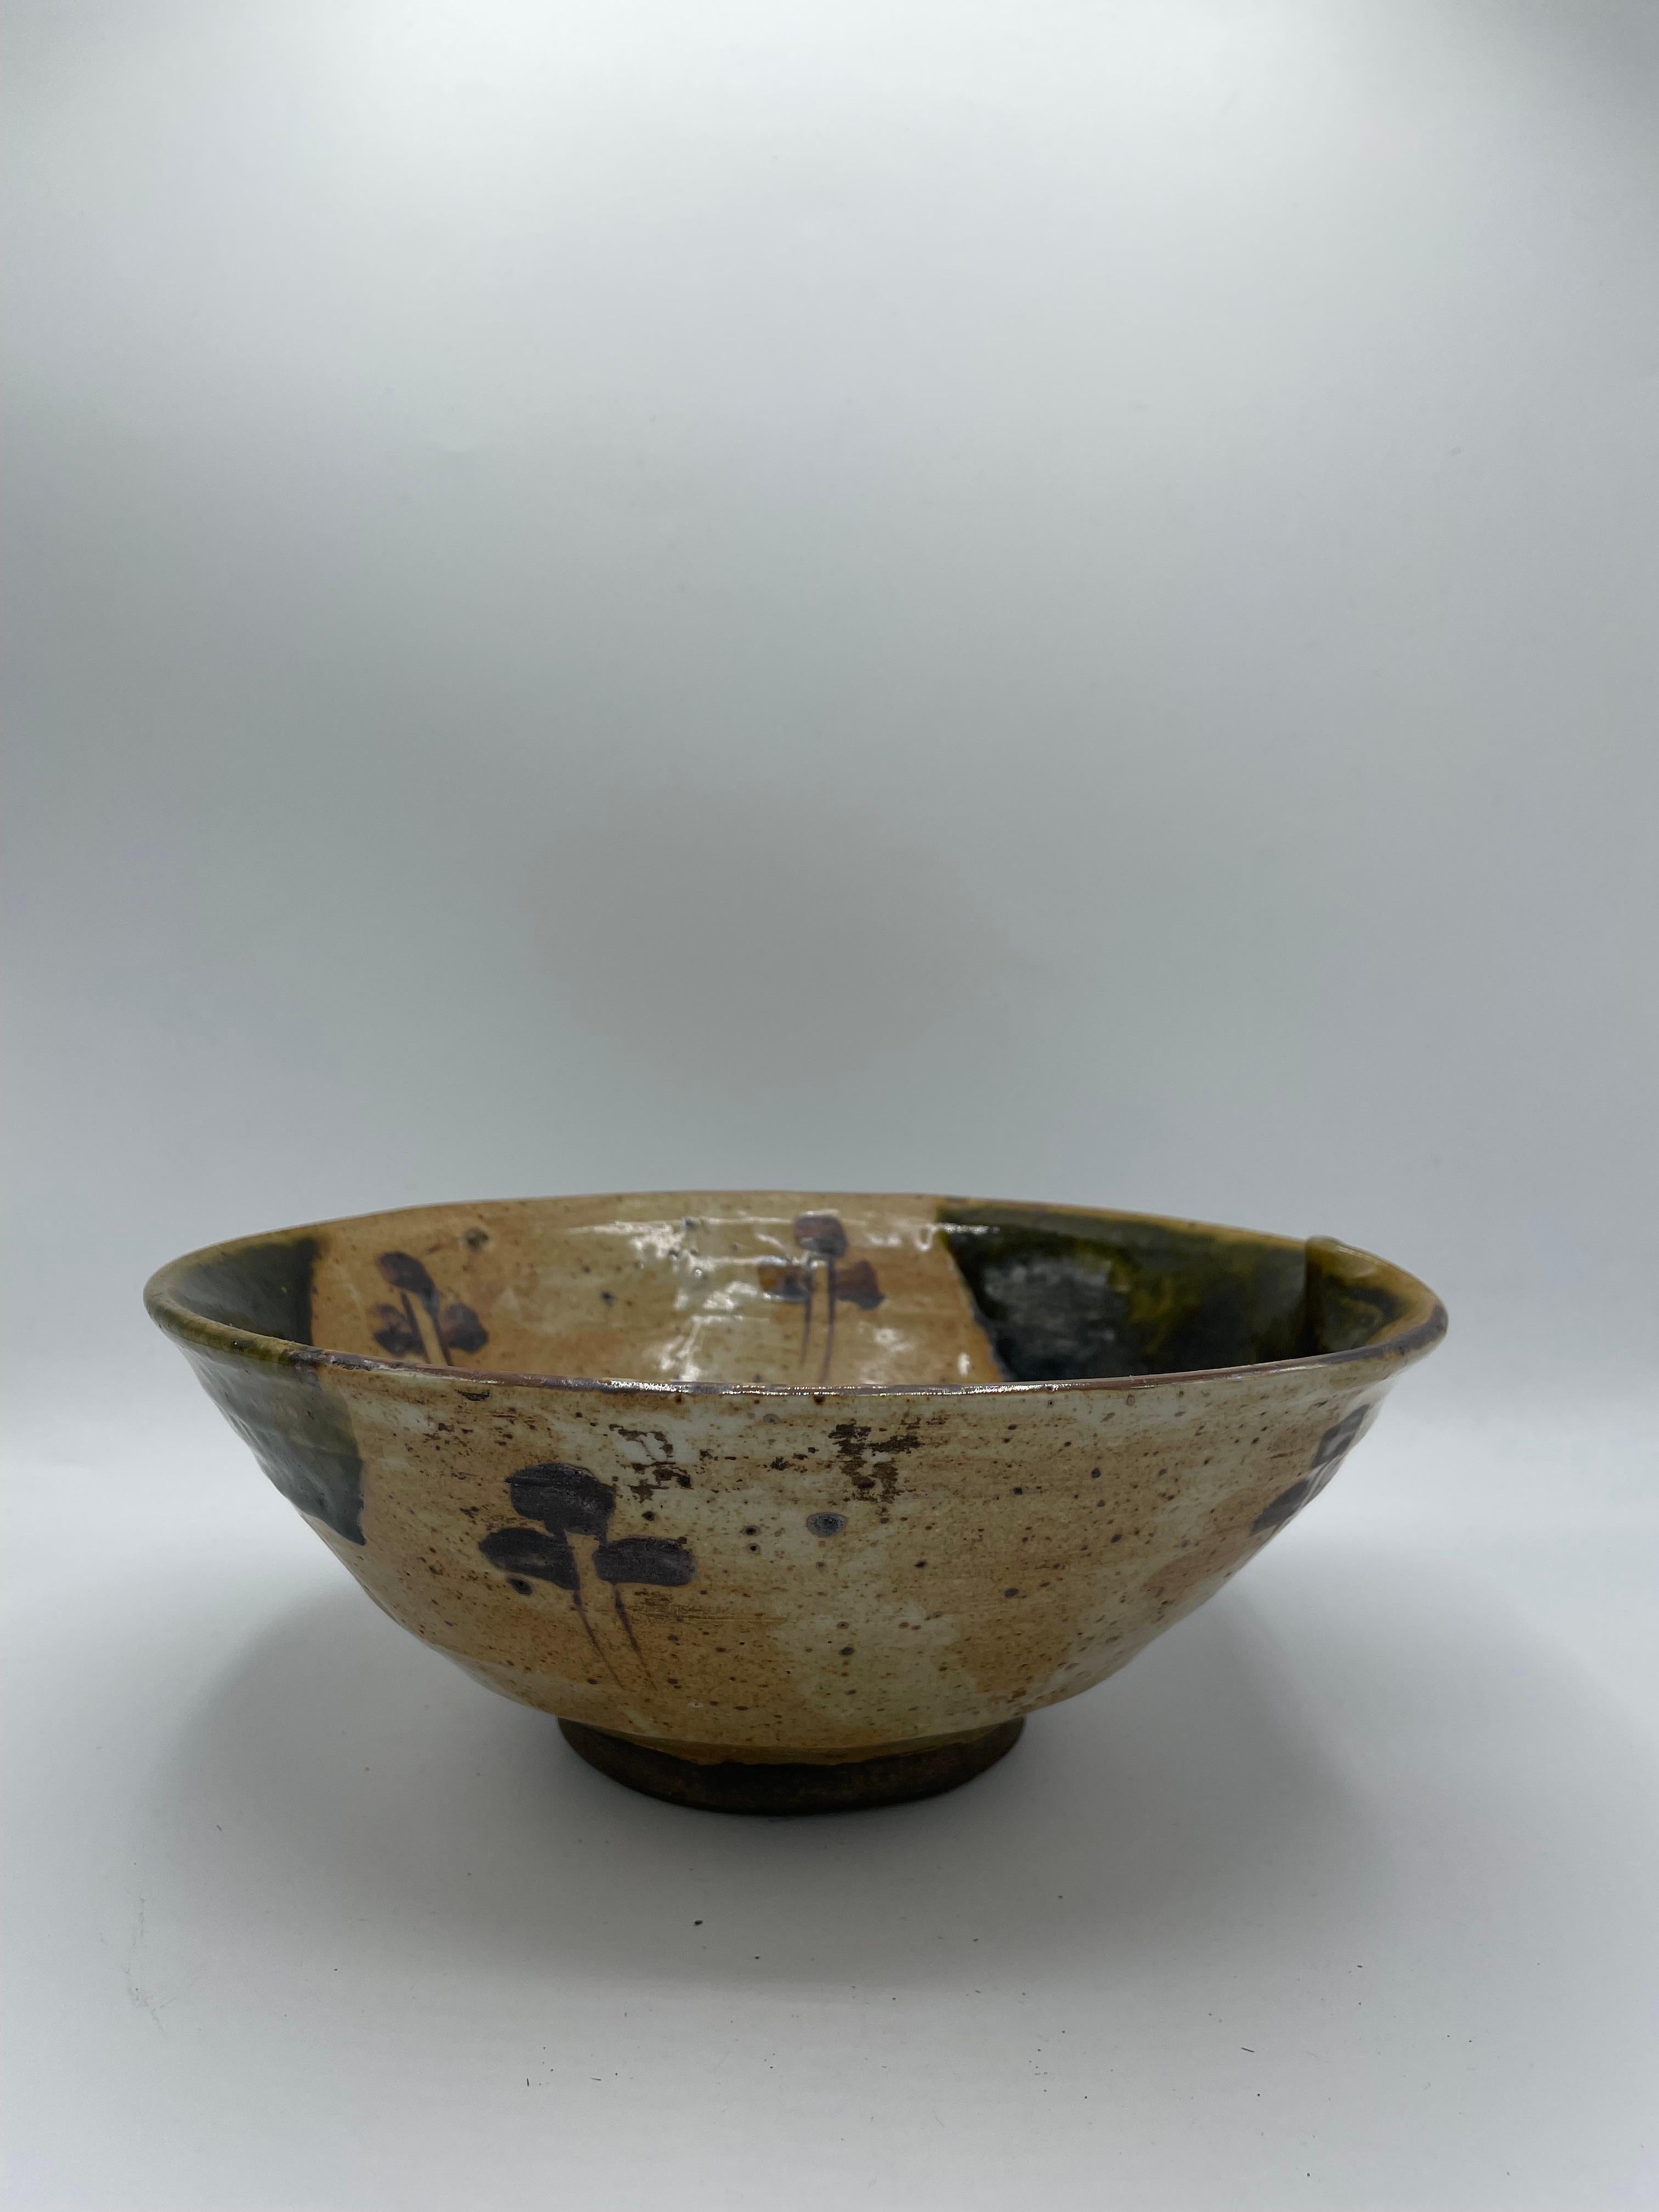 Il s'agit d'un ancien bol de service en porcelaine.
Il est fabriqué au Japon selon la technique Oribe. Ce bol a été fabriqué à l'époque d'Edo vers 1850.

La poterie d'Oribe (Oribe-yaki) est un style de poterie japonaise apparu pour la première fois